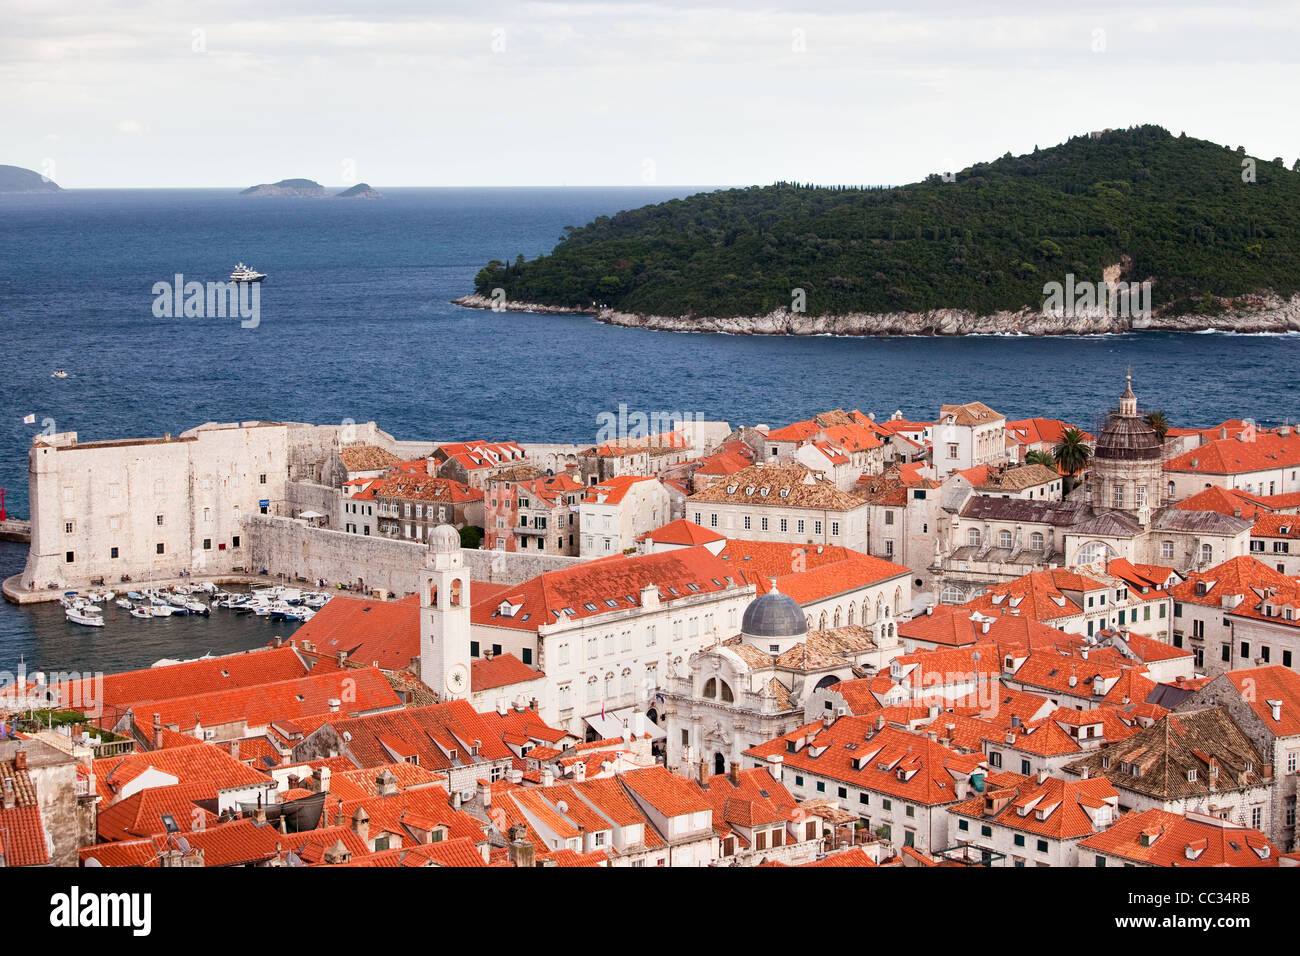 Vue panoramique sur la vieille ville de Dubrovnik et l'île de Lokrum sur la mer Adriatique en Croatie Banque D'Images